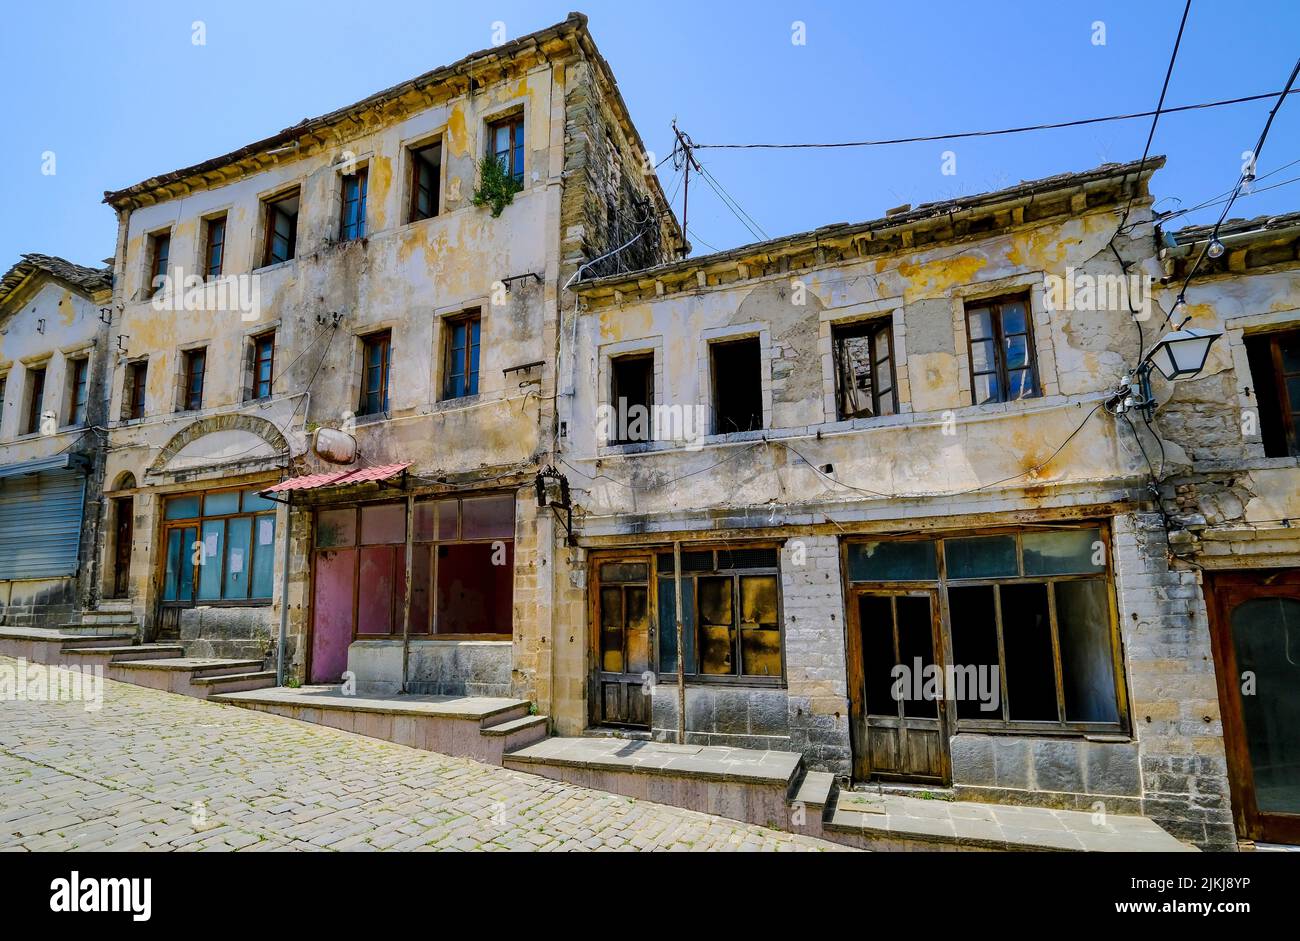 Ciudad de Gjirokastra, Gjirokastra, Albania - El casco antiguo histórico de la ciudad de montaña de Gjirokastra se está deteriorando gradualmente, poniendo en peligro su condición de Patrimonio Mundial de la UNESCO. Foto de stock